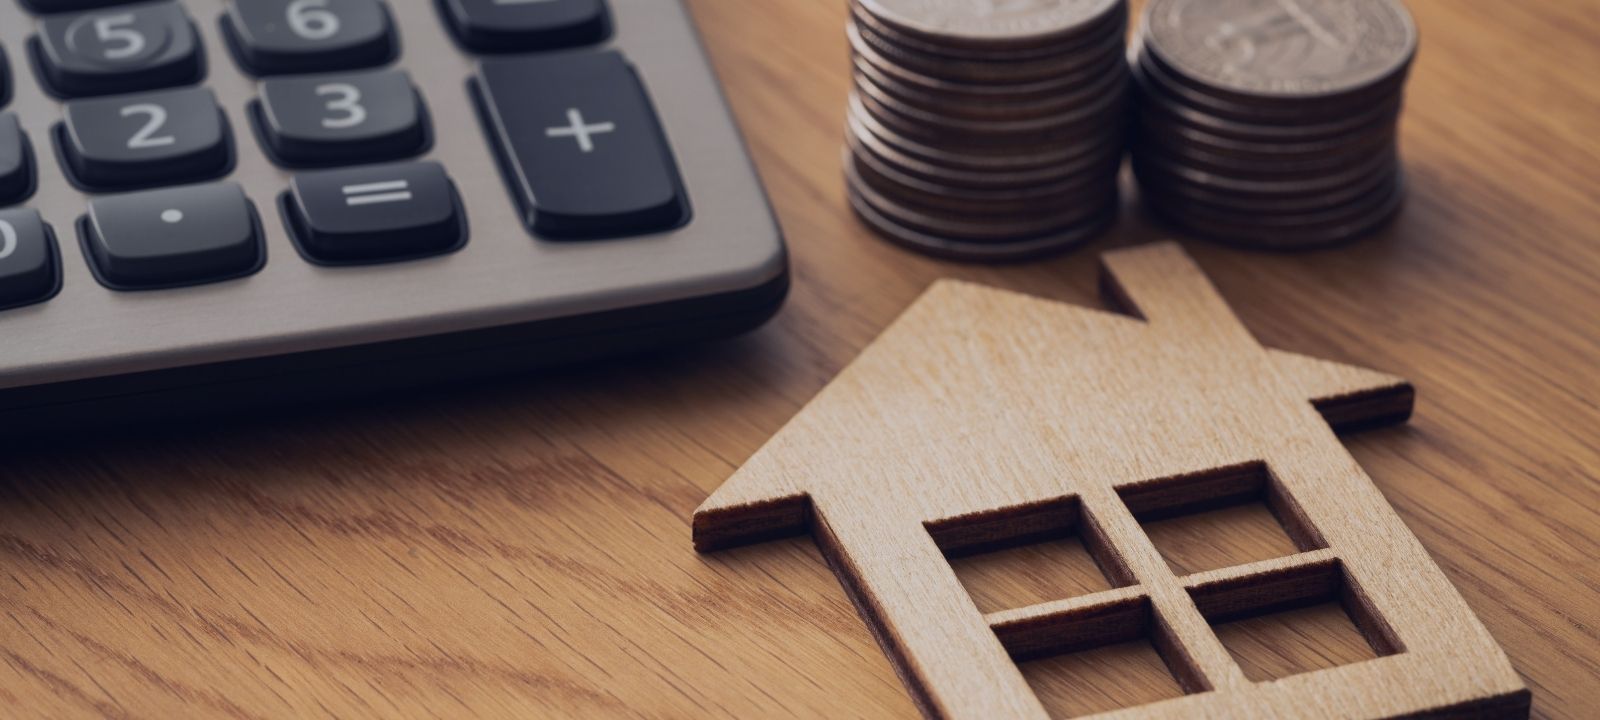 Encontrar la mejor hipoteca: Consejos para conseguir las mejores condiciones